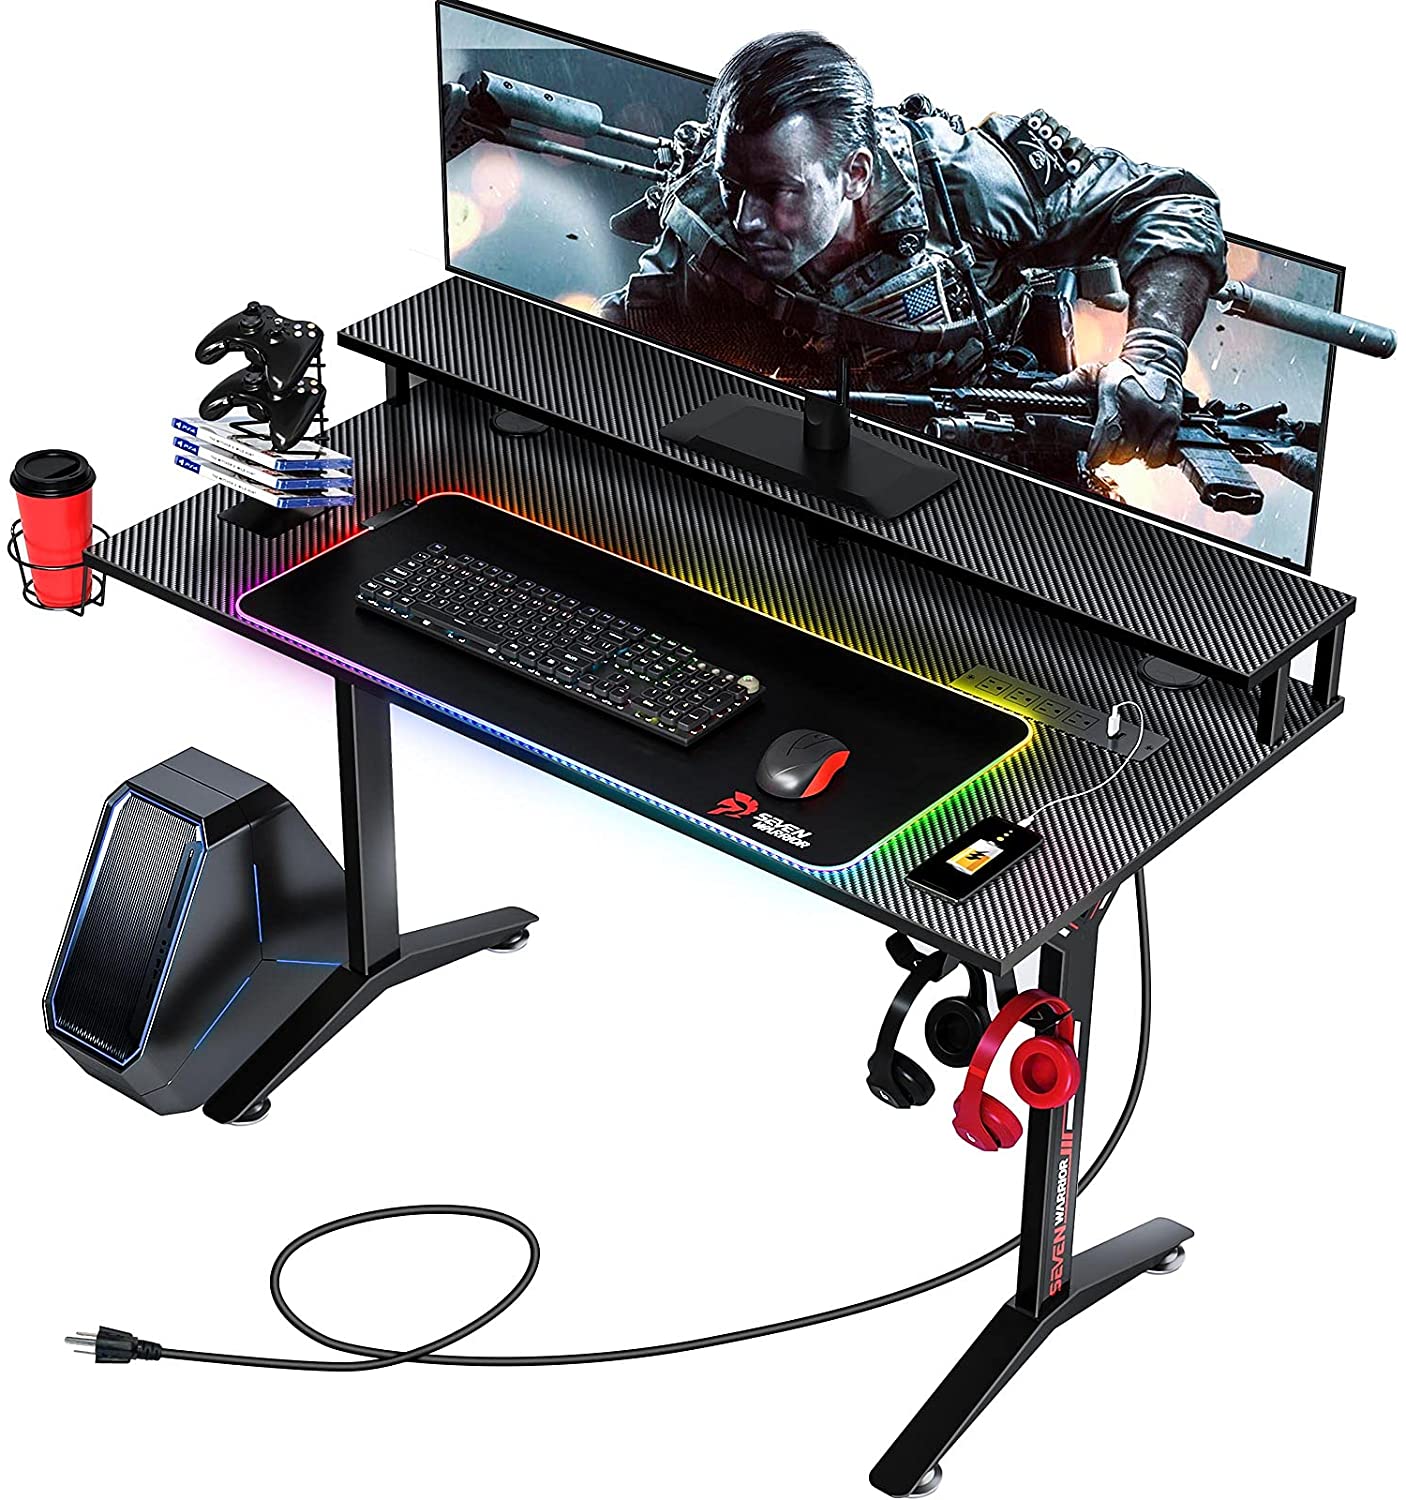 5. Seven Warrior Gaming Desk Carbon Fiber Surface